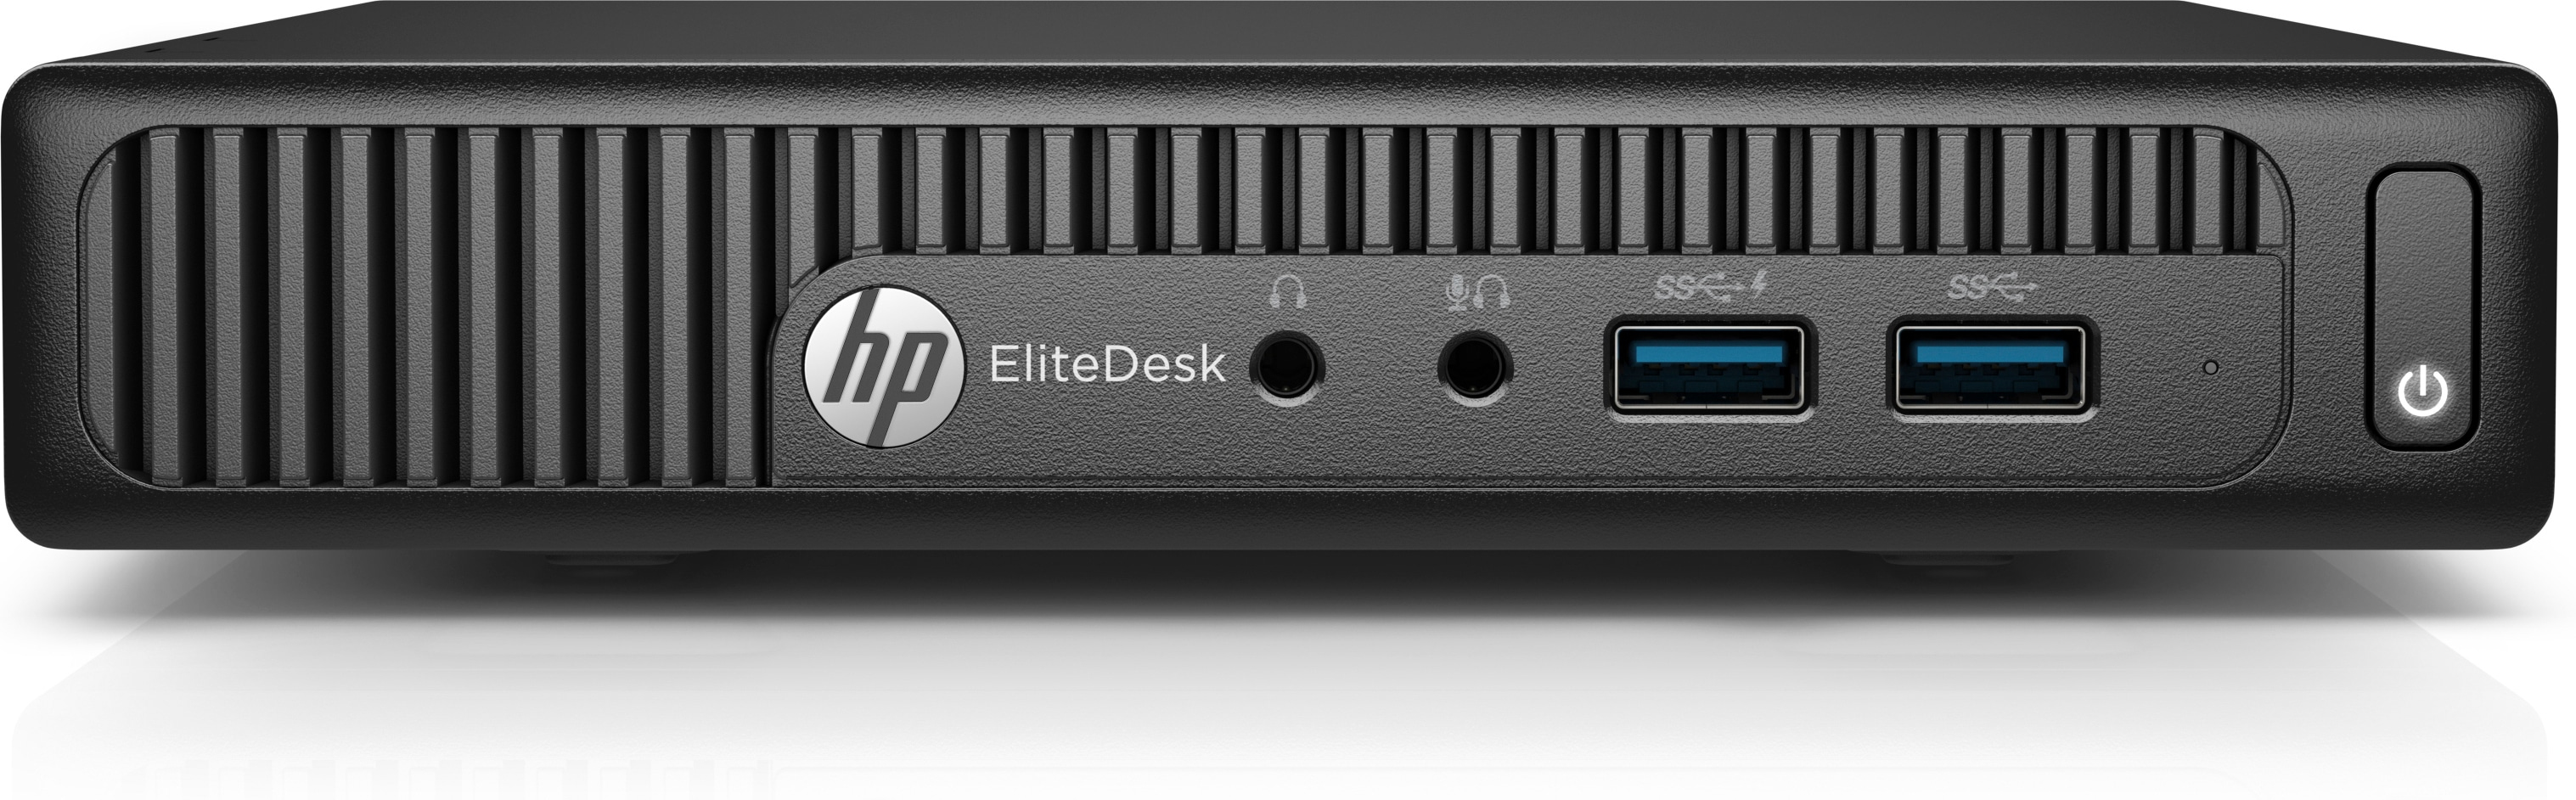 Desktop Hp Elitedesk 705 G3 Amd A10-9700E 8Gb 128Gb Ssd W10 Y7B07Lt